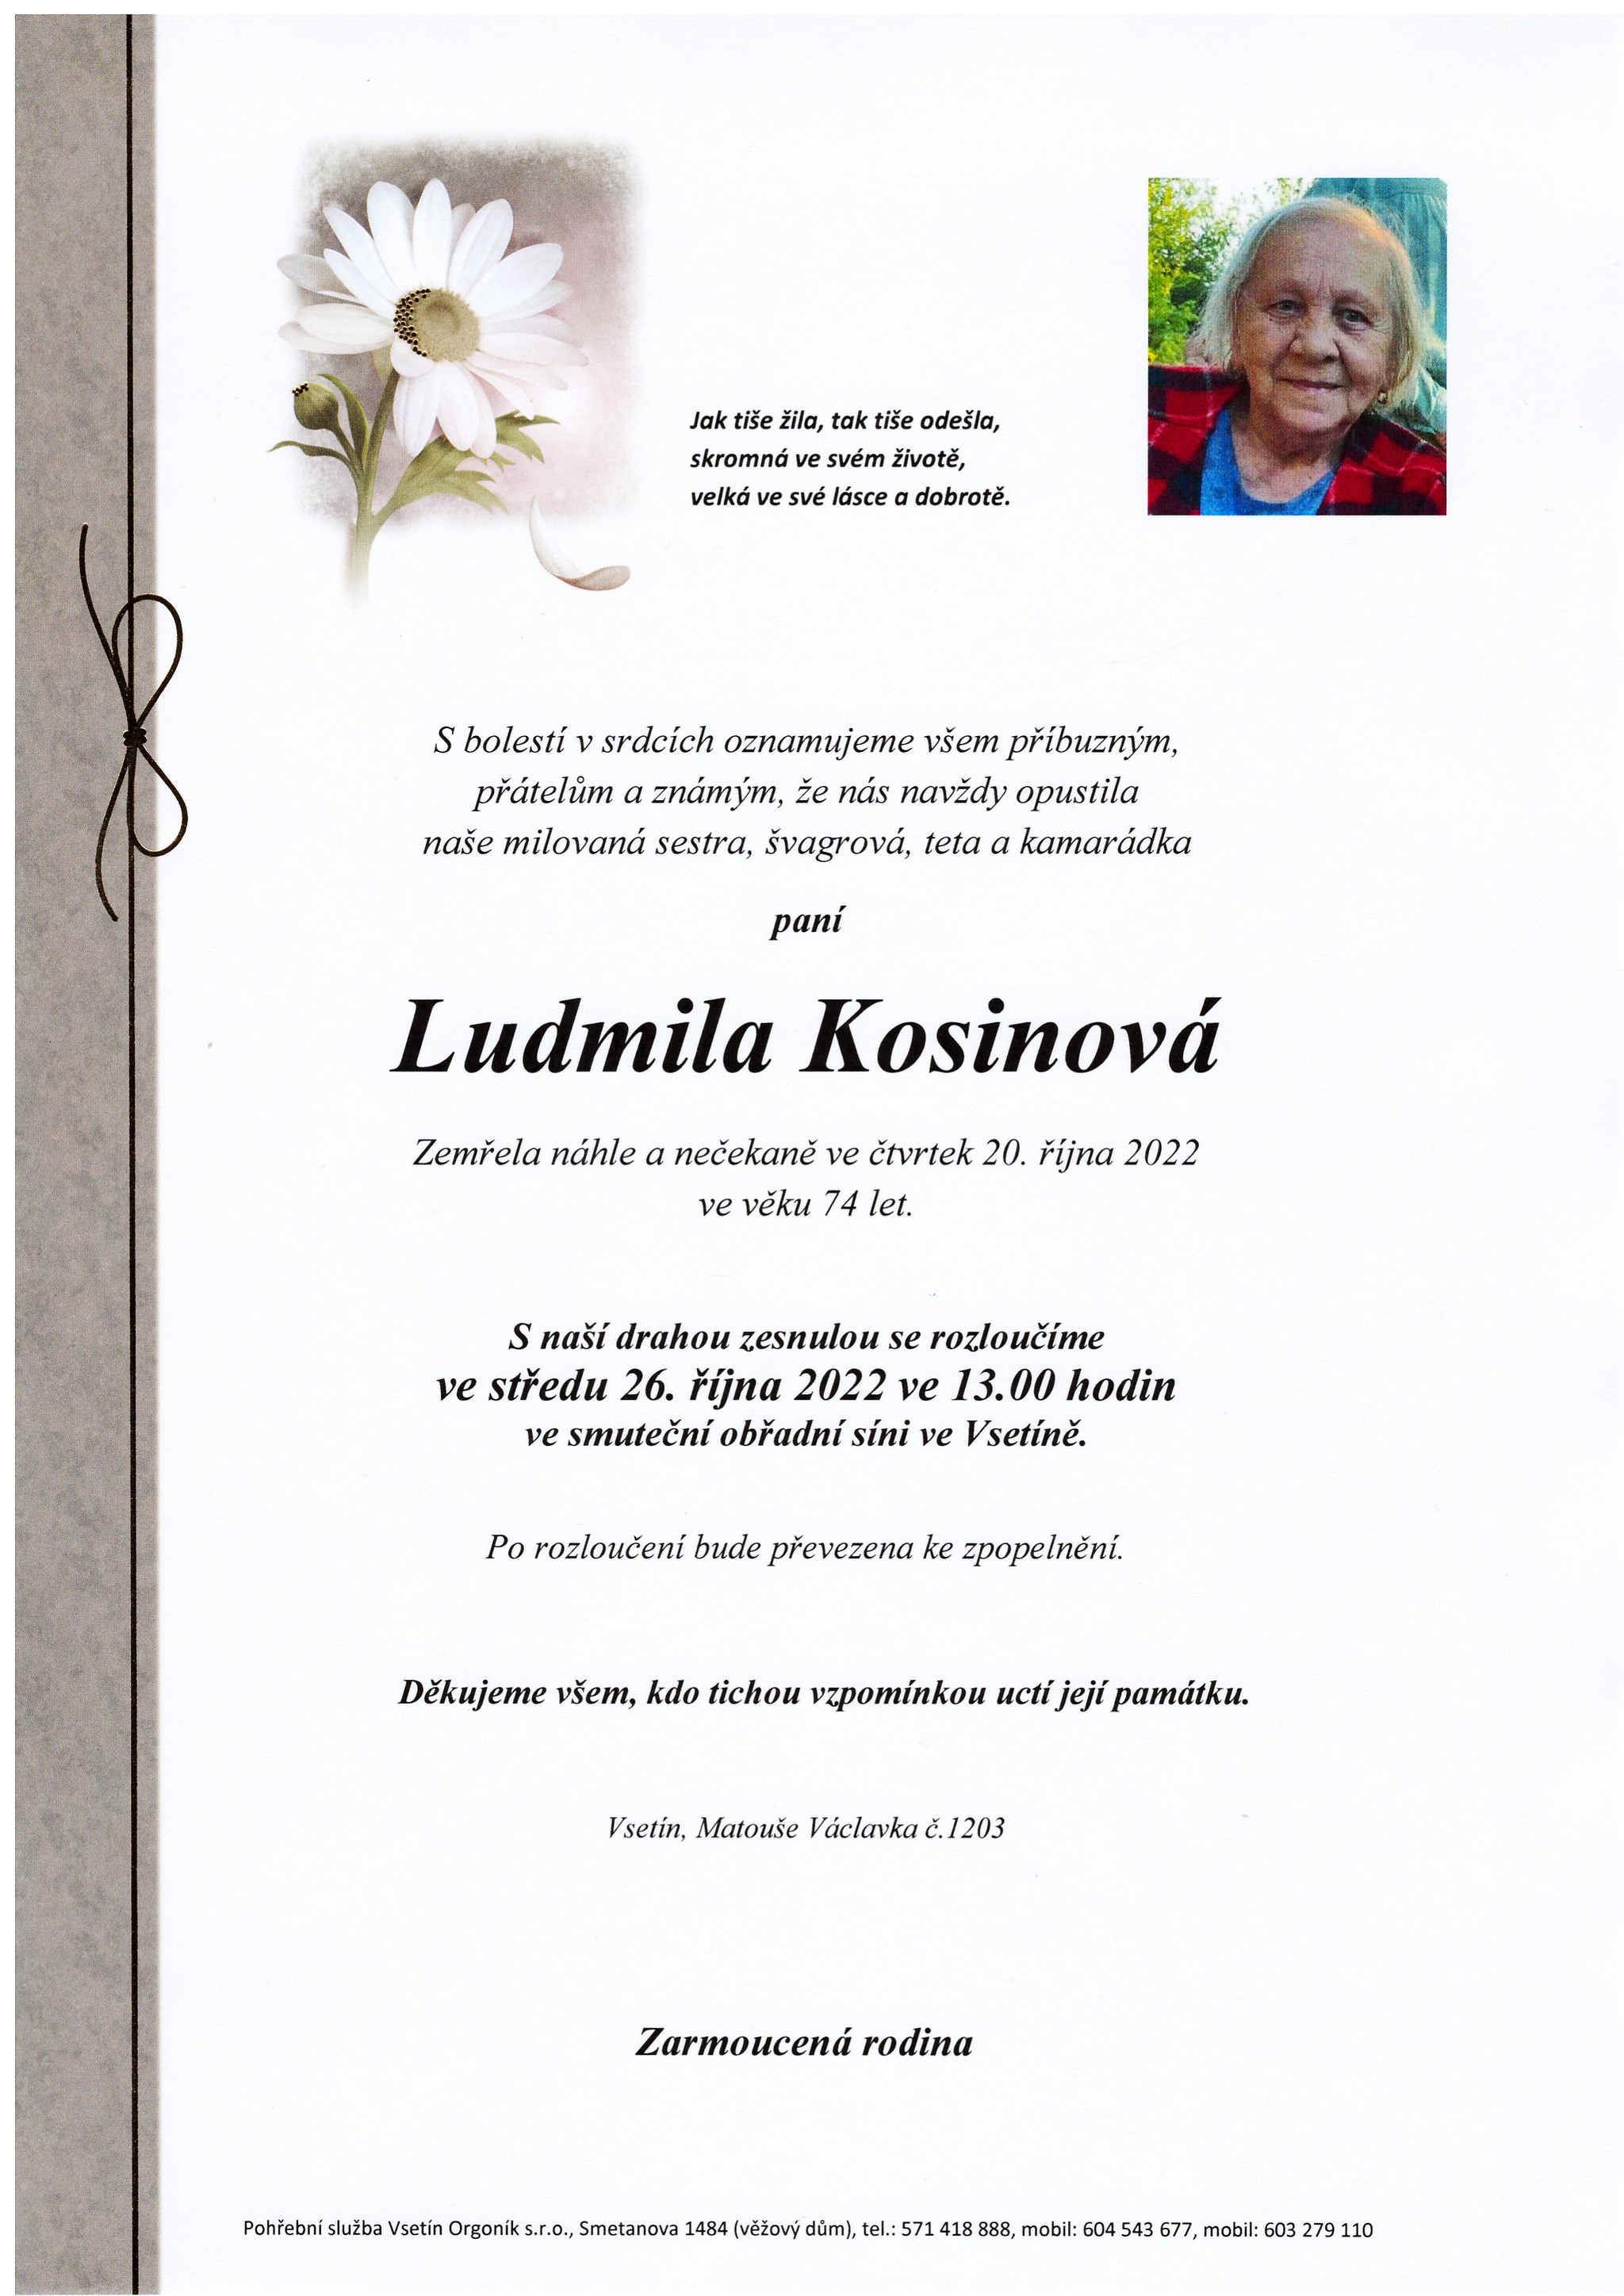 Ludmila Kosinová